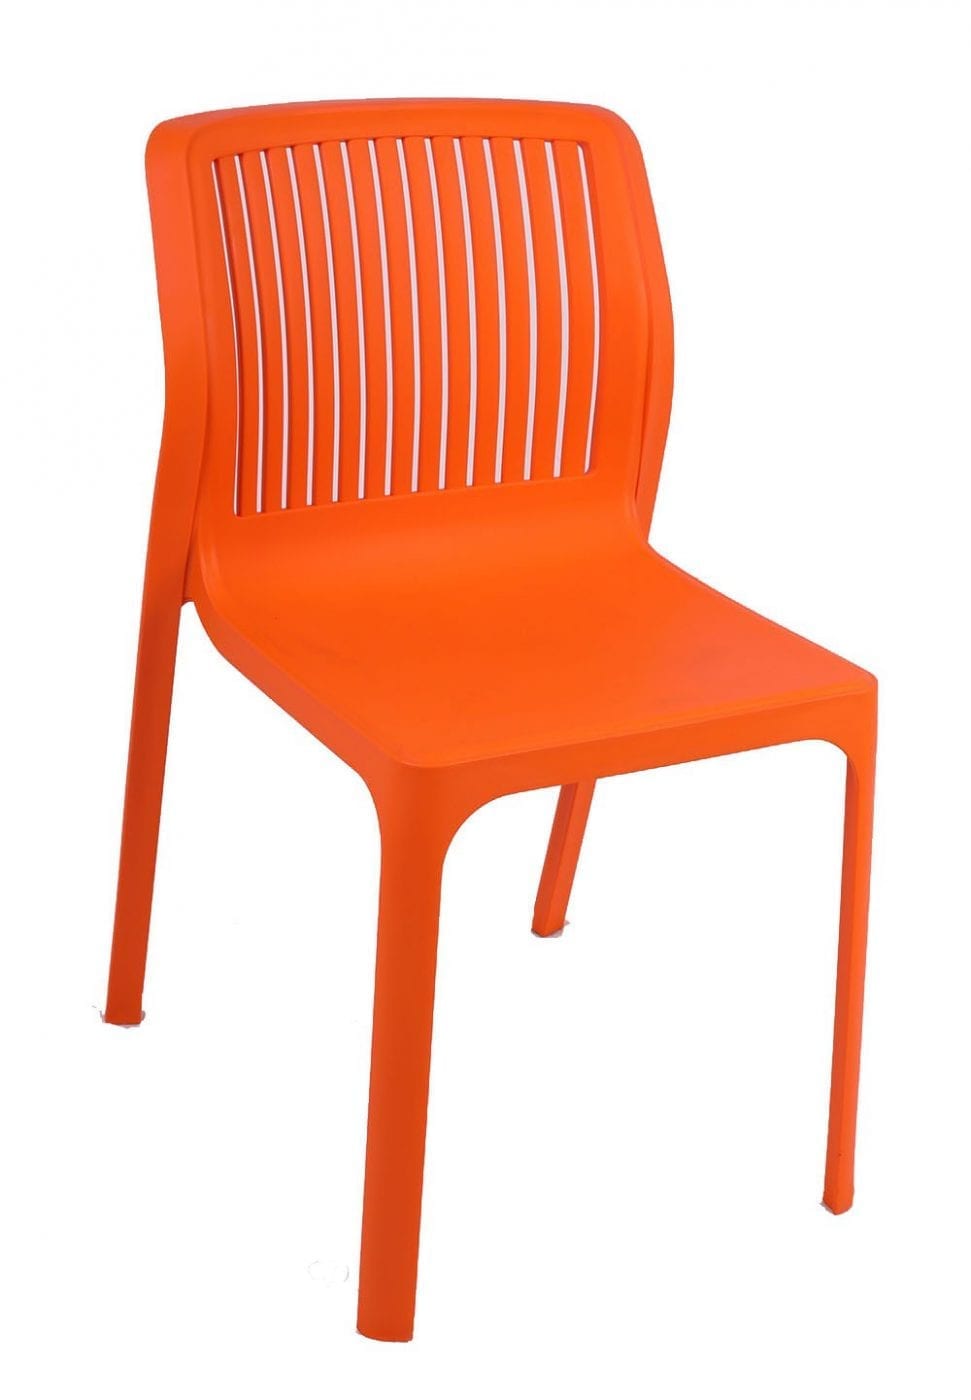 Gallantry Dictatorship each כסא פלסטיק - אנג'לו 09 פסים - מרכז הכסאות